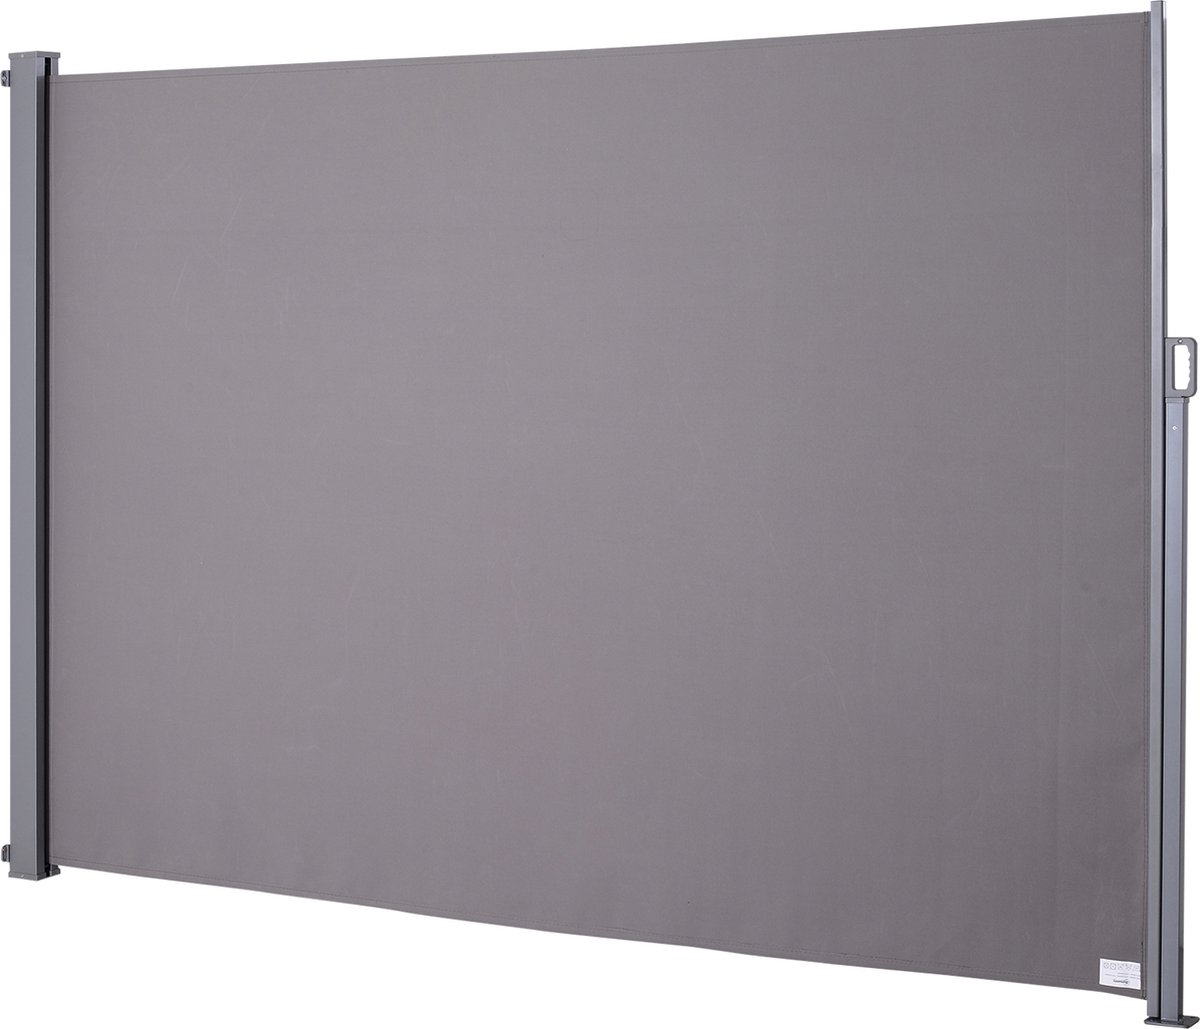 Outsunny Zijzonwering privacyscherm zonwering zijrolgordijn polyester grijs 300 x 200 cm 840-210V02